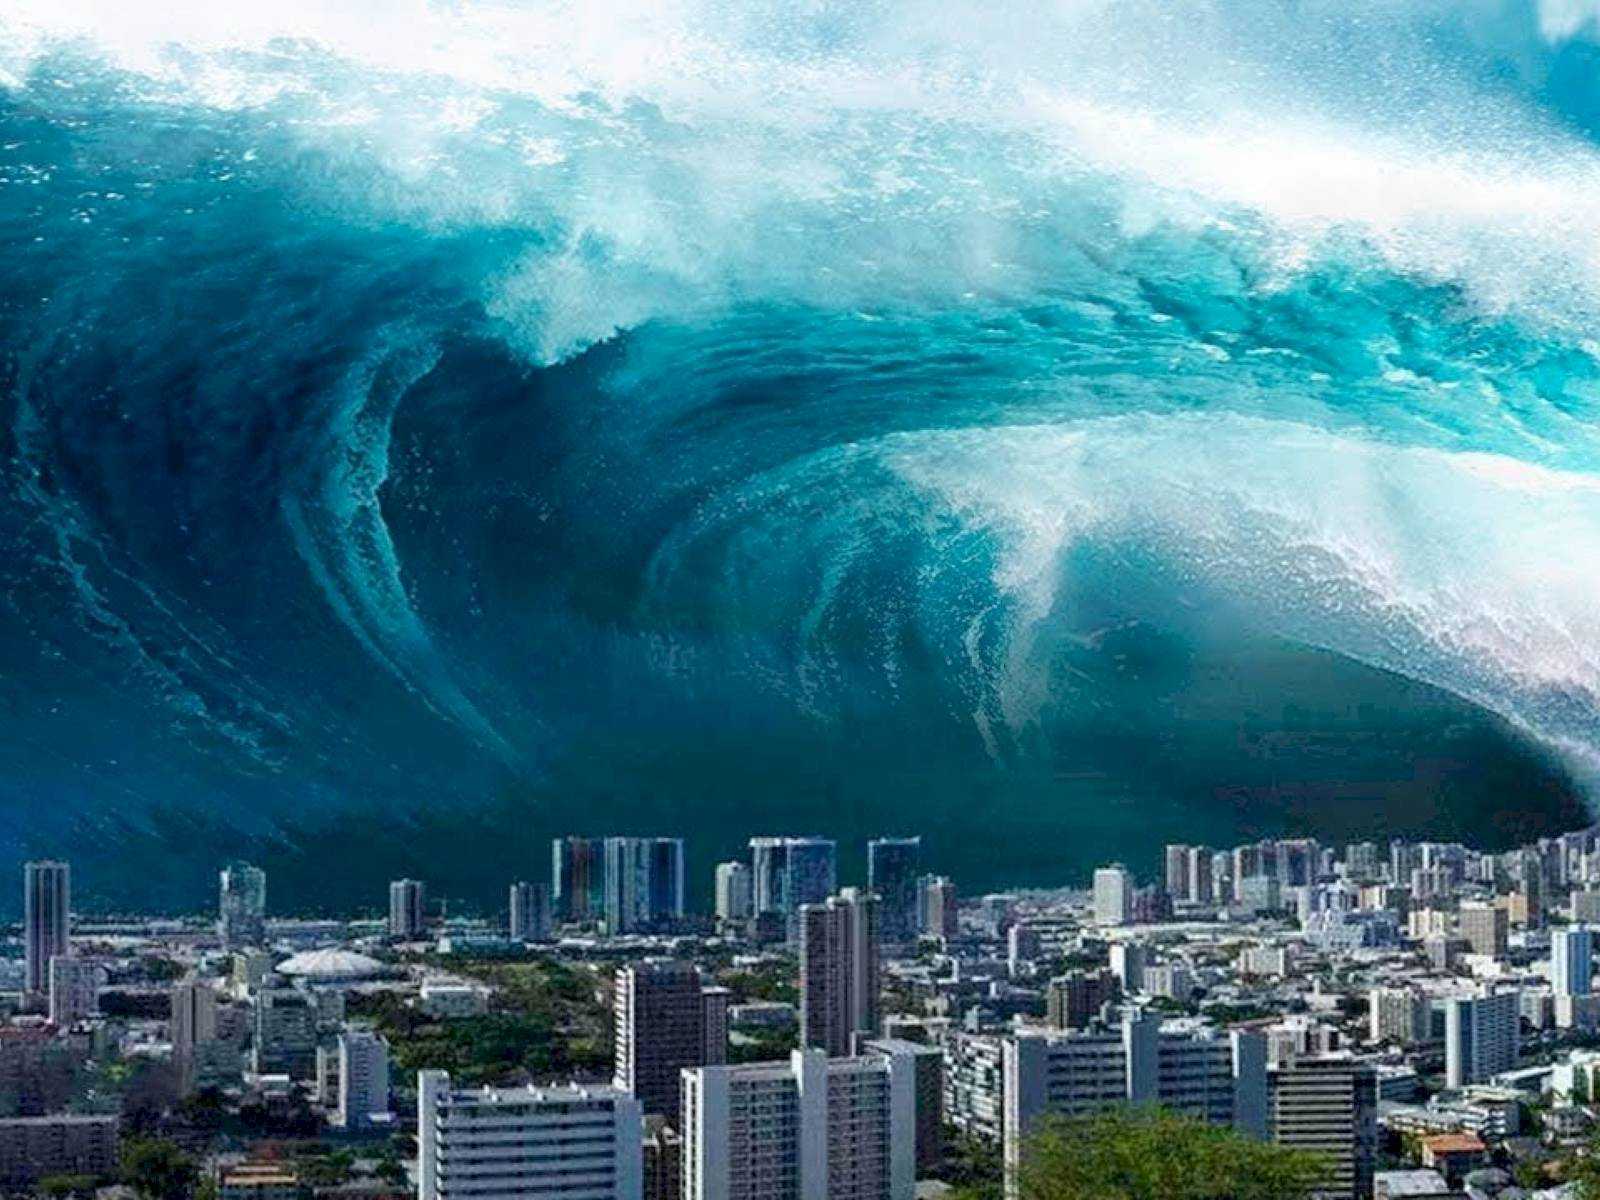 ТОП-10 самых страшных и крупных цунами в мире: видео, фото Какое самое страшное цунами в истории человечества Самые крупные цунами Японии, США